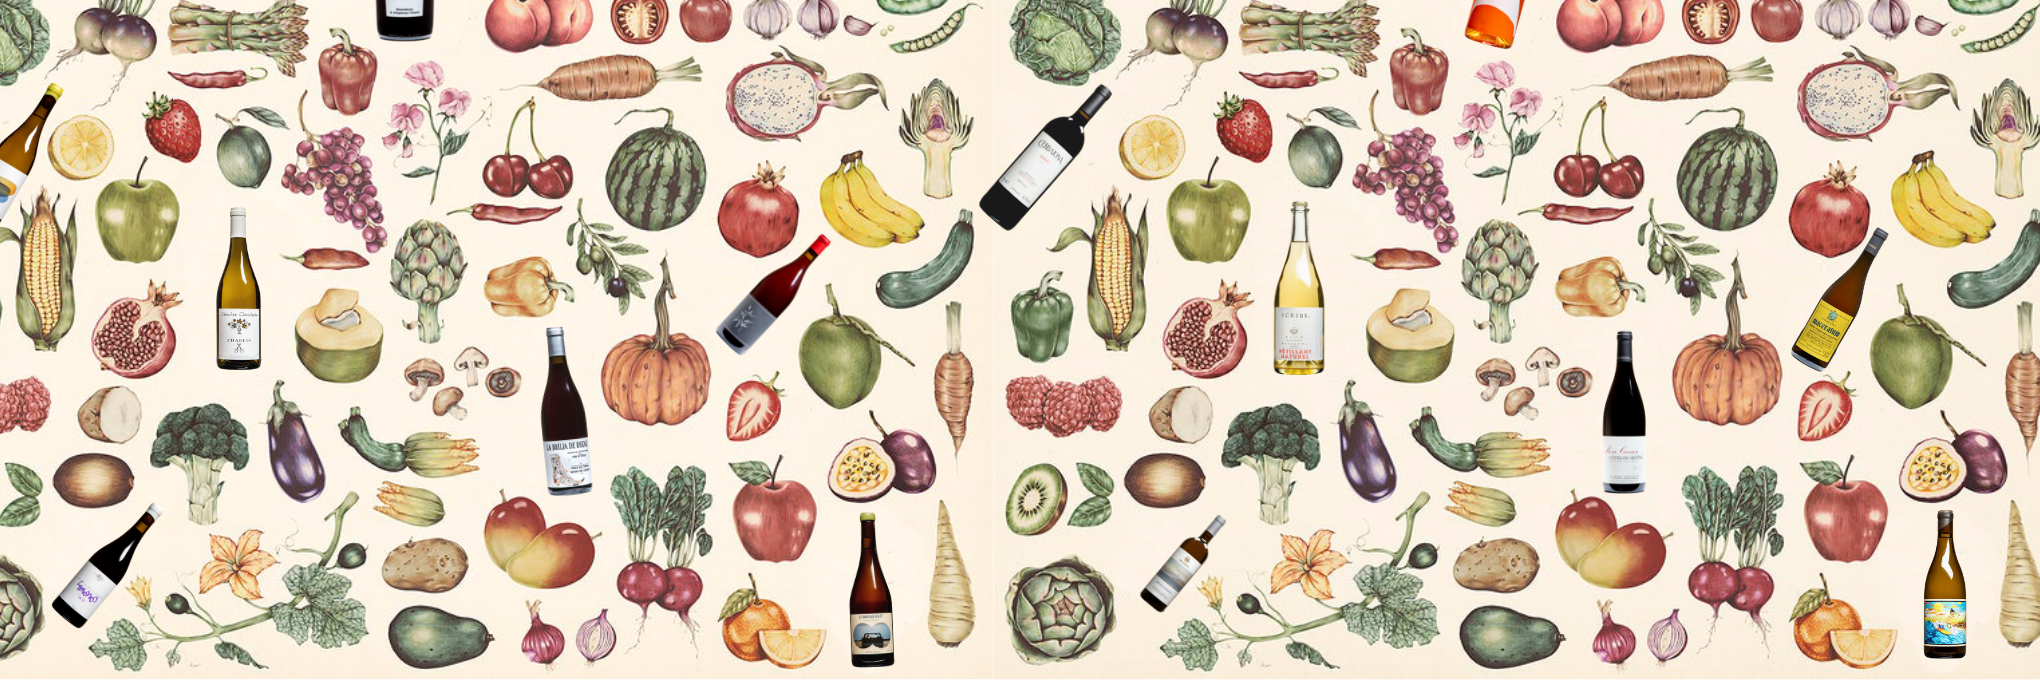 Best Wine Pairings for Vegetarian Food's Article Visual